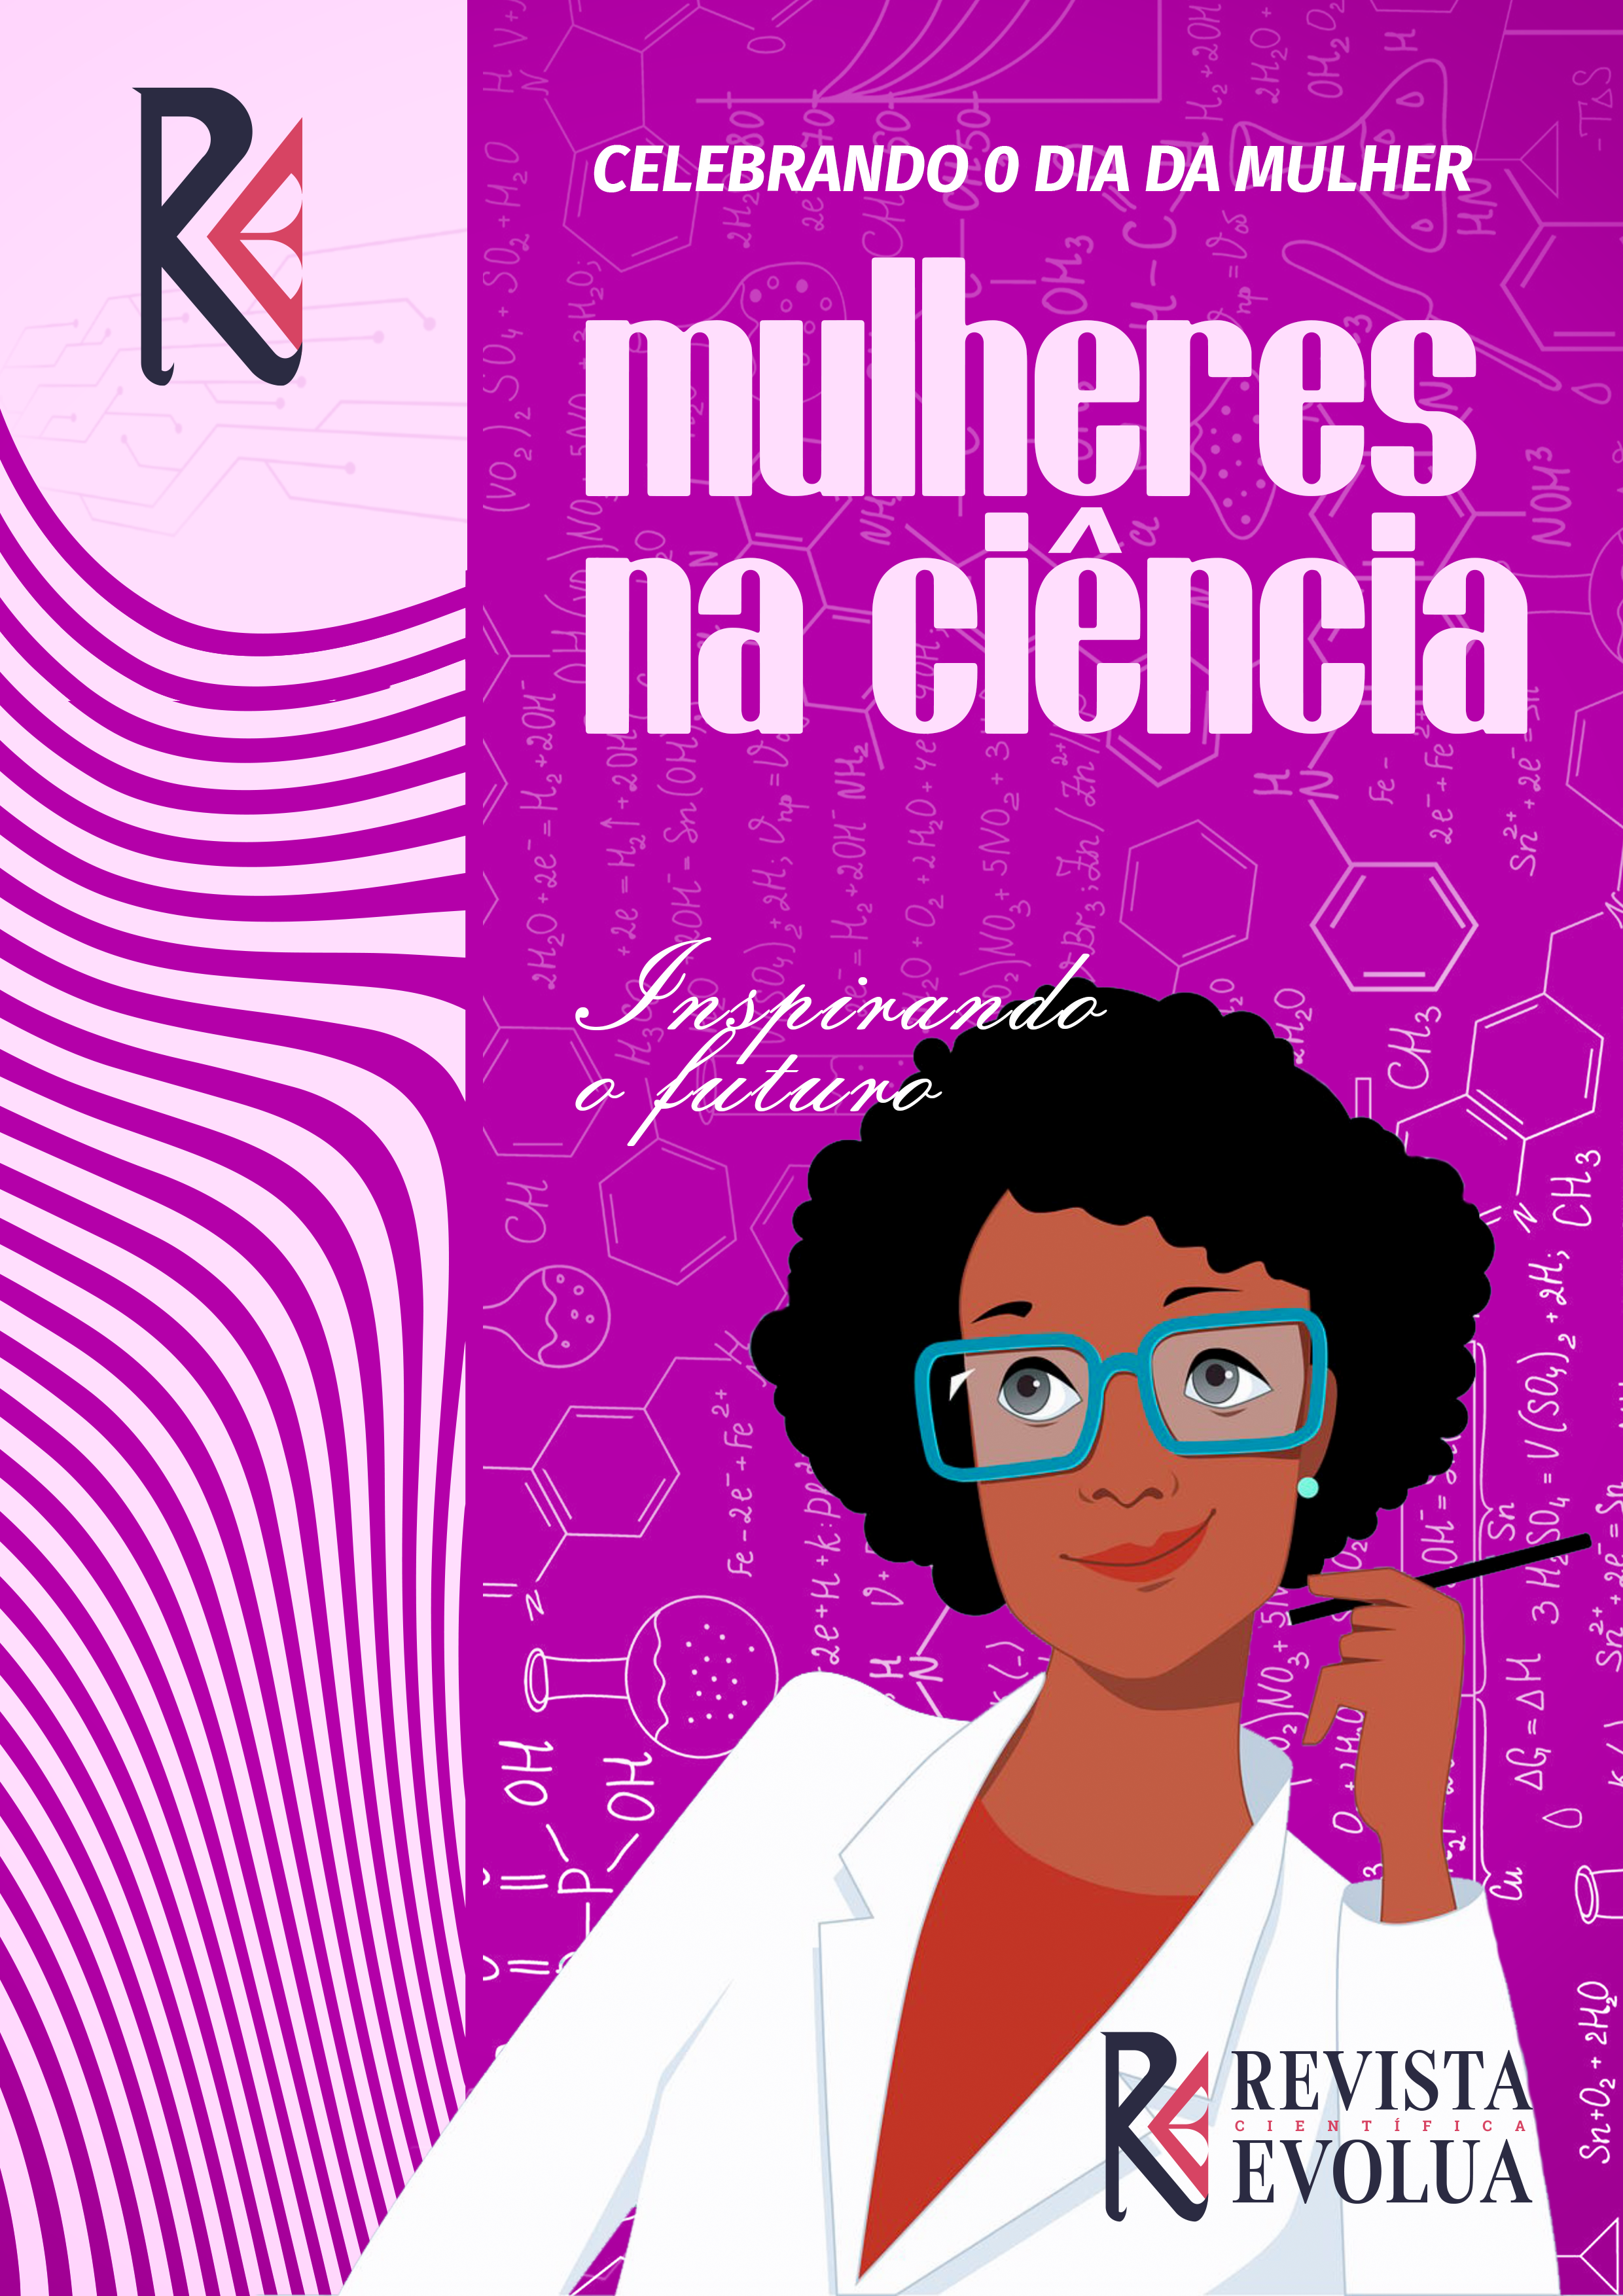 Uma imagem de uma mulher cientista trabalhando em um laboratório, com um texto em destaque que diz "Mulheres na Ciência: Inspirando o Futuro"